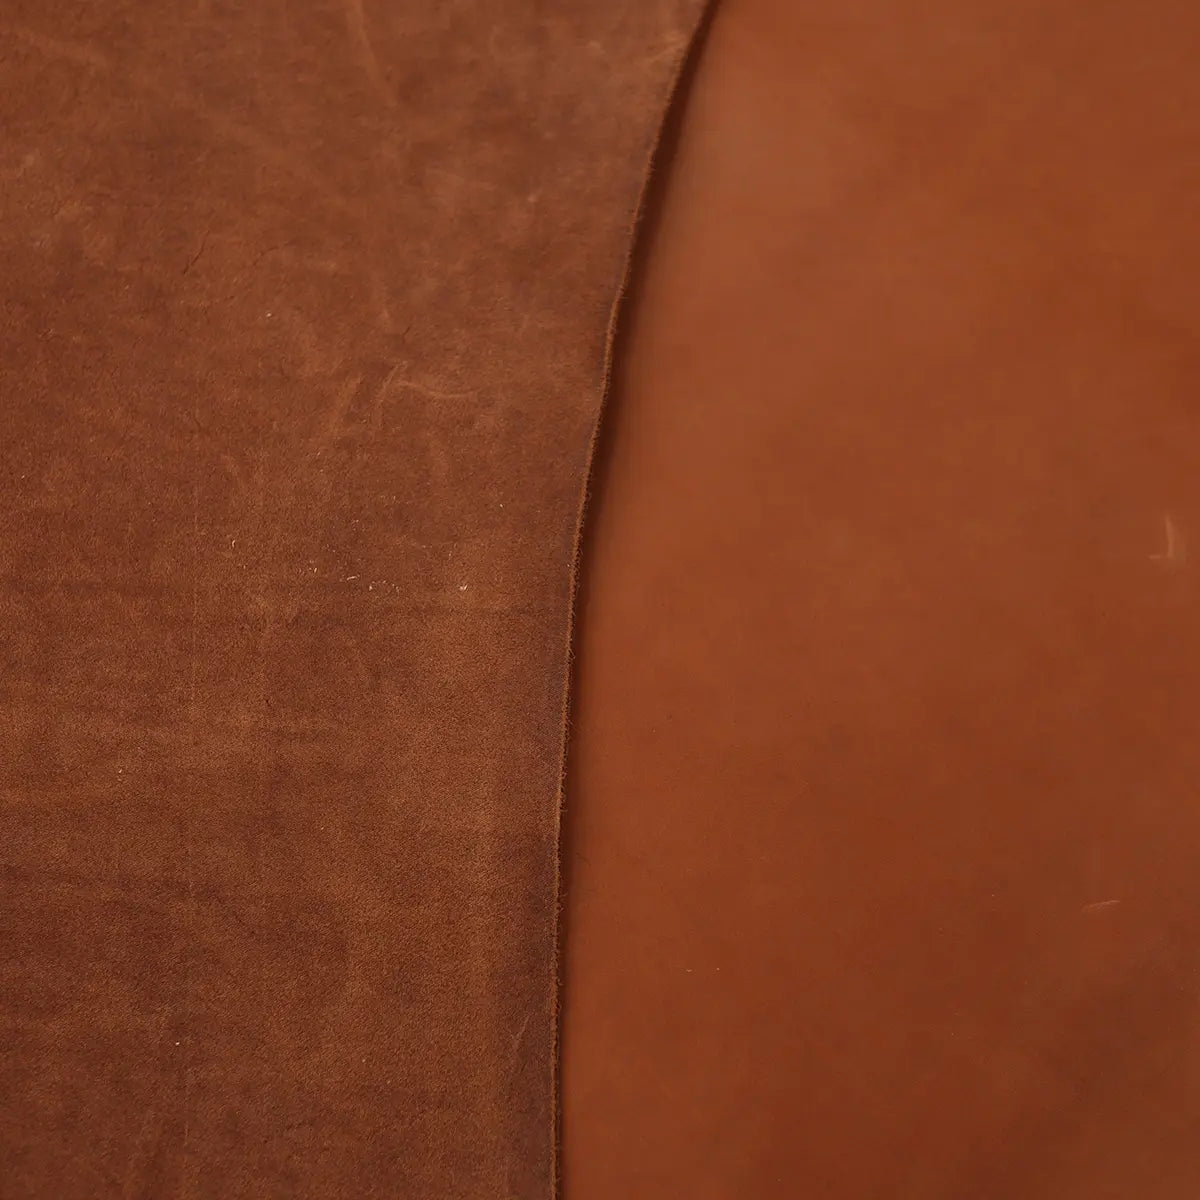 SB Foot Teakwood Chrome Tanned 5-6oz Leather